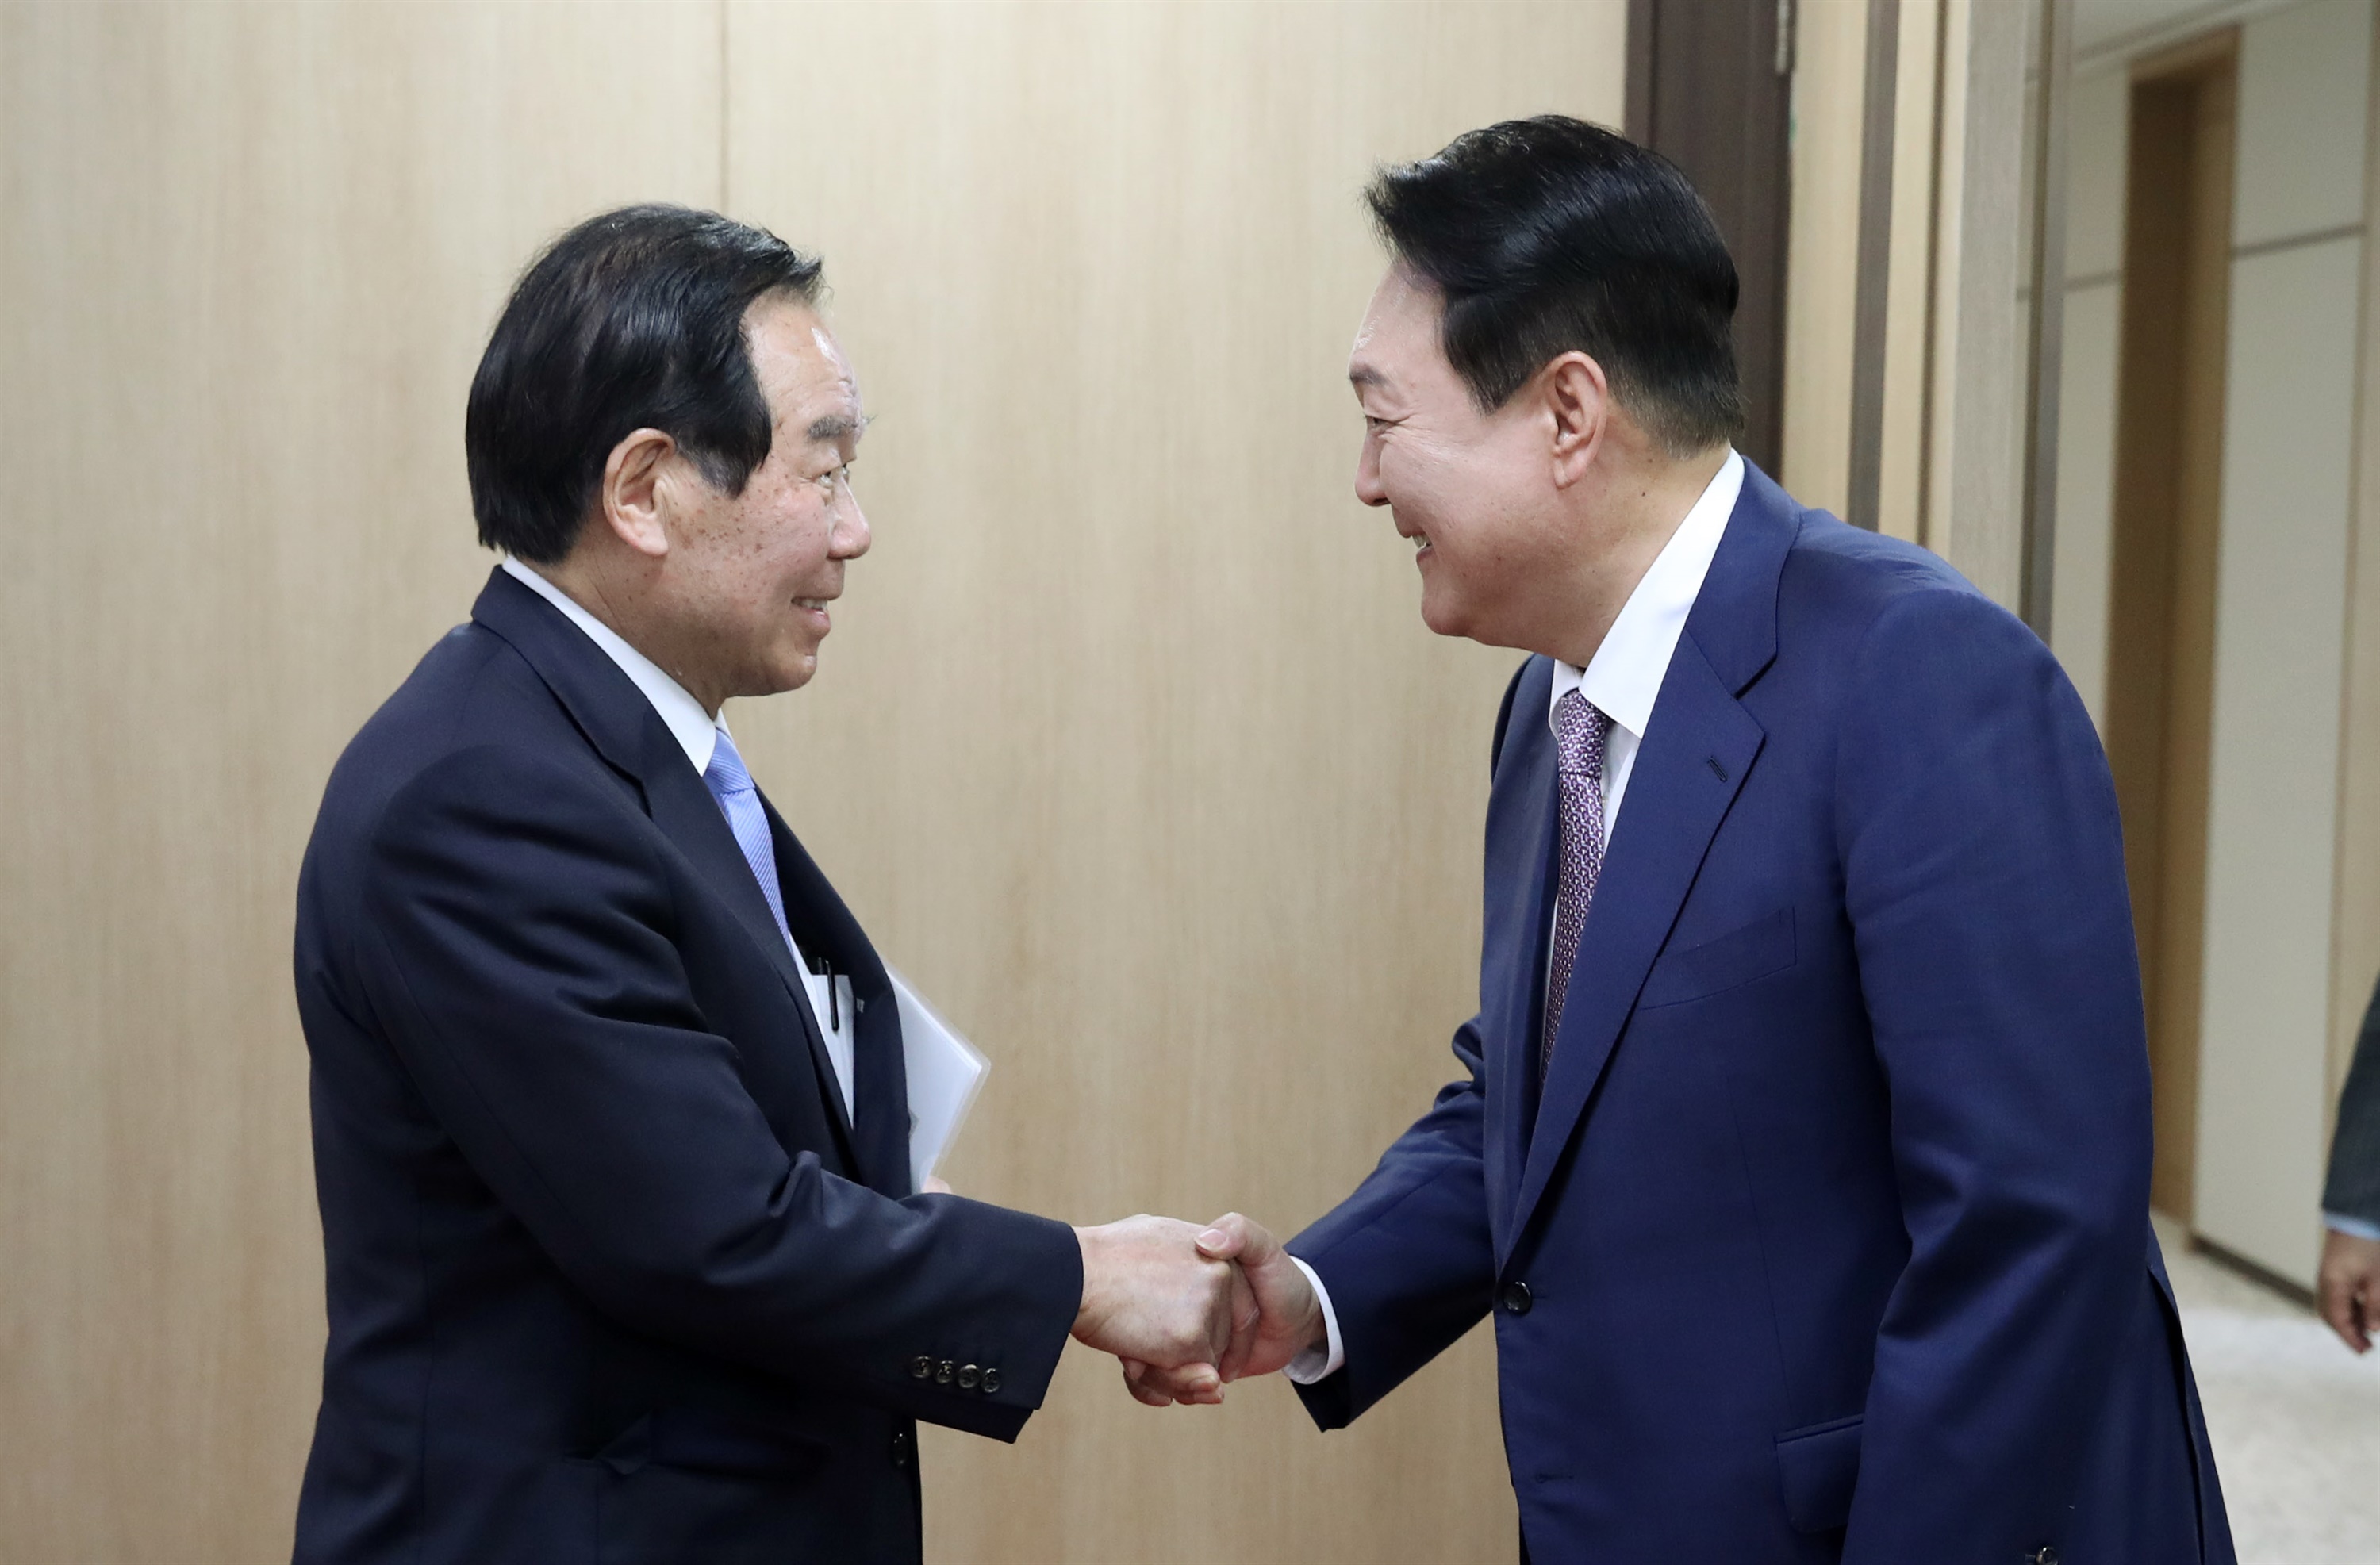 ユン大統領が日本の議員に会う「できるだけ早く関係を改善しよう」